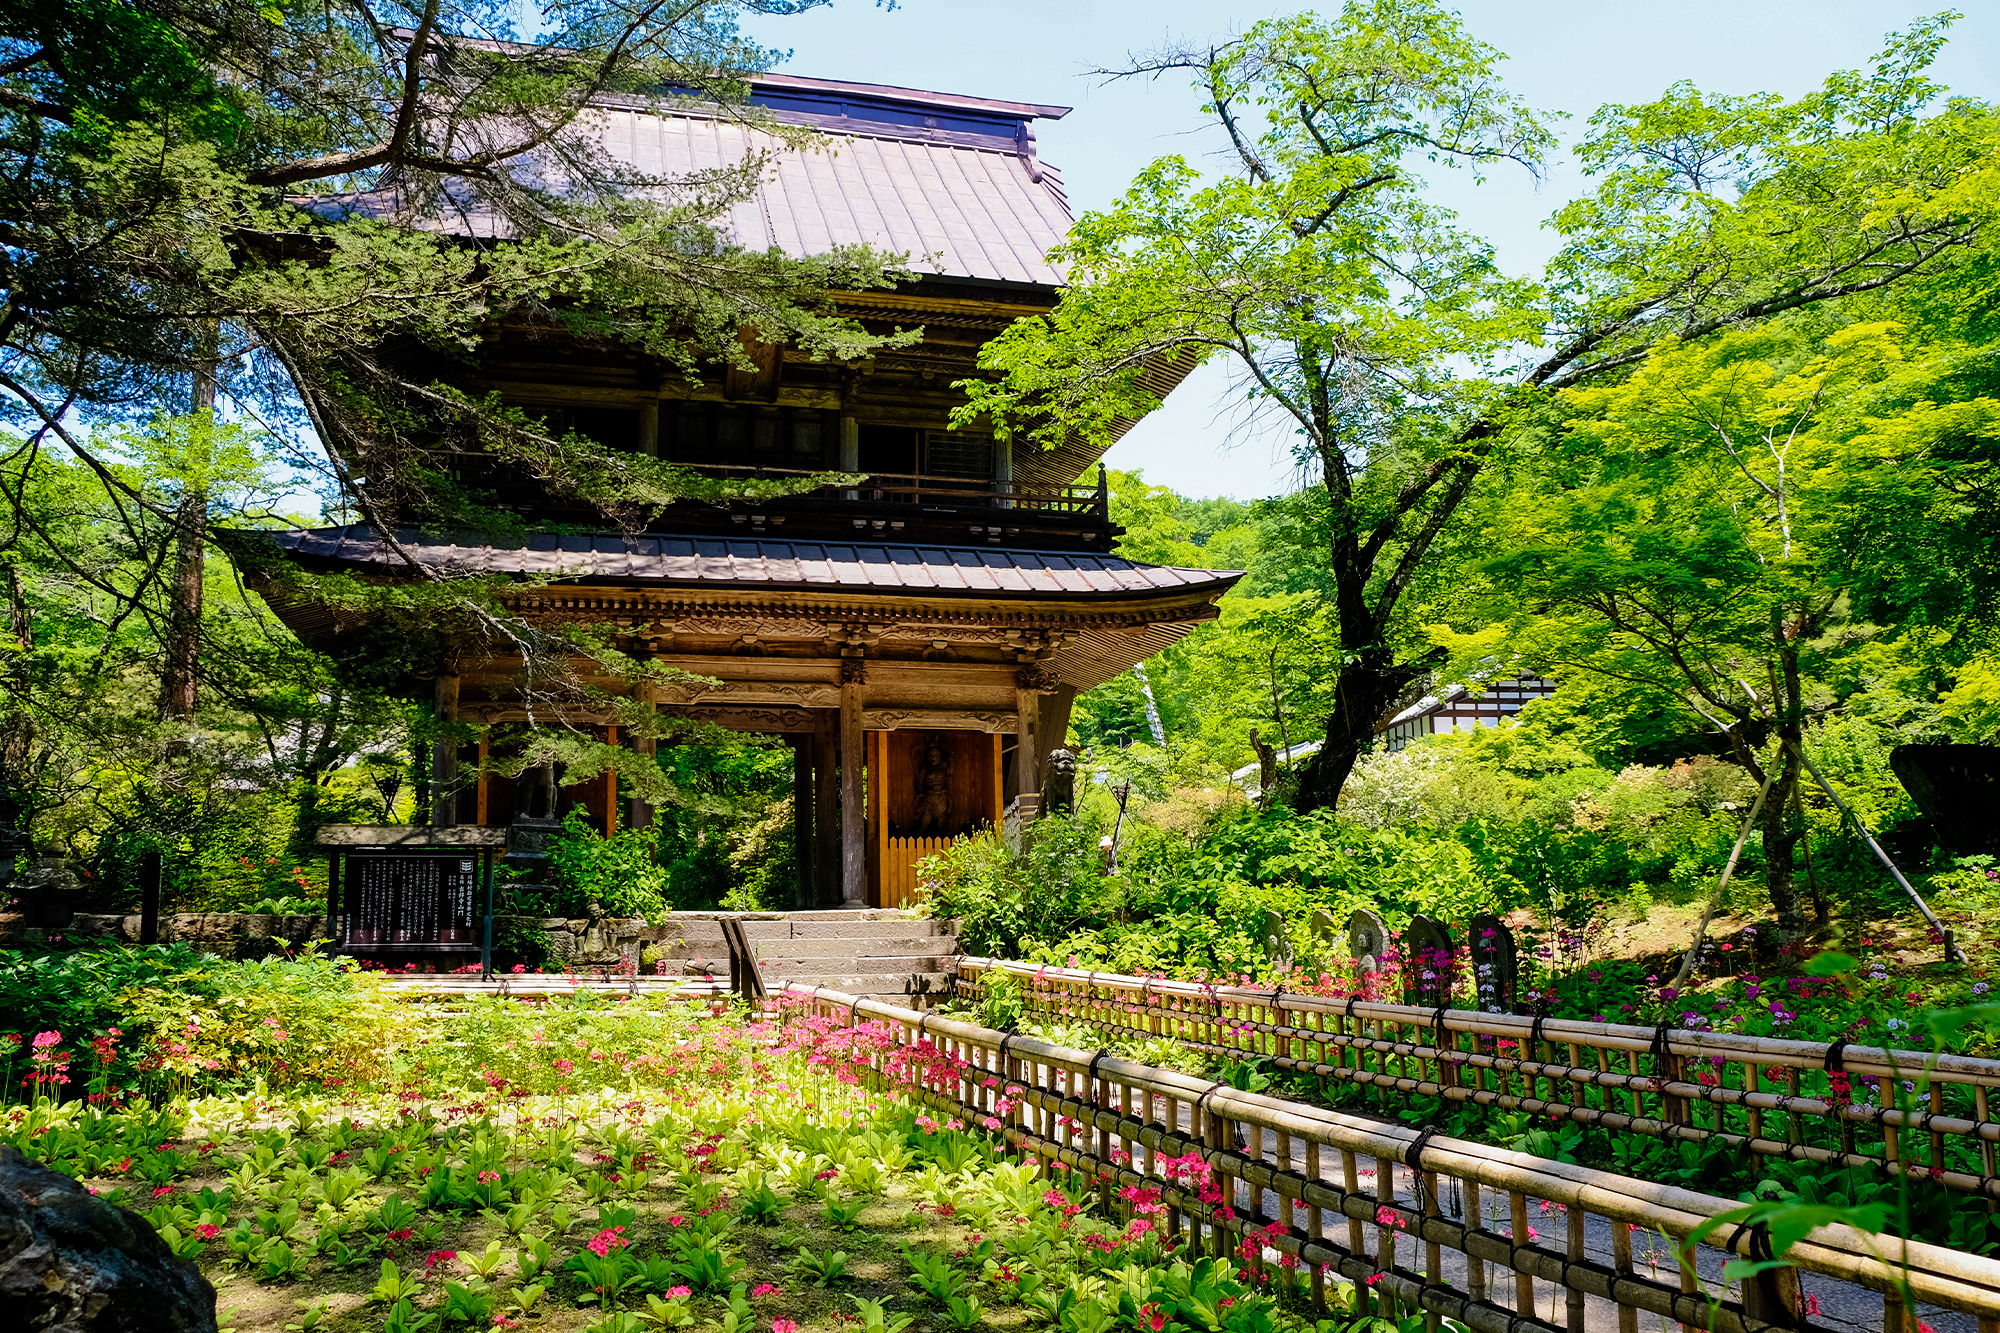 Kichijoji Temple